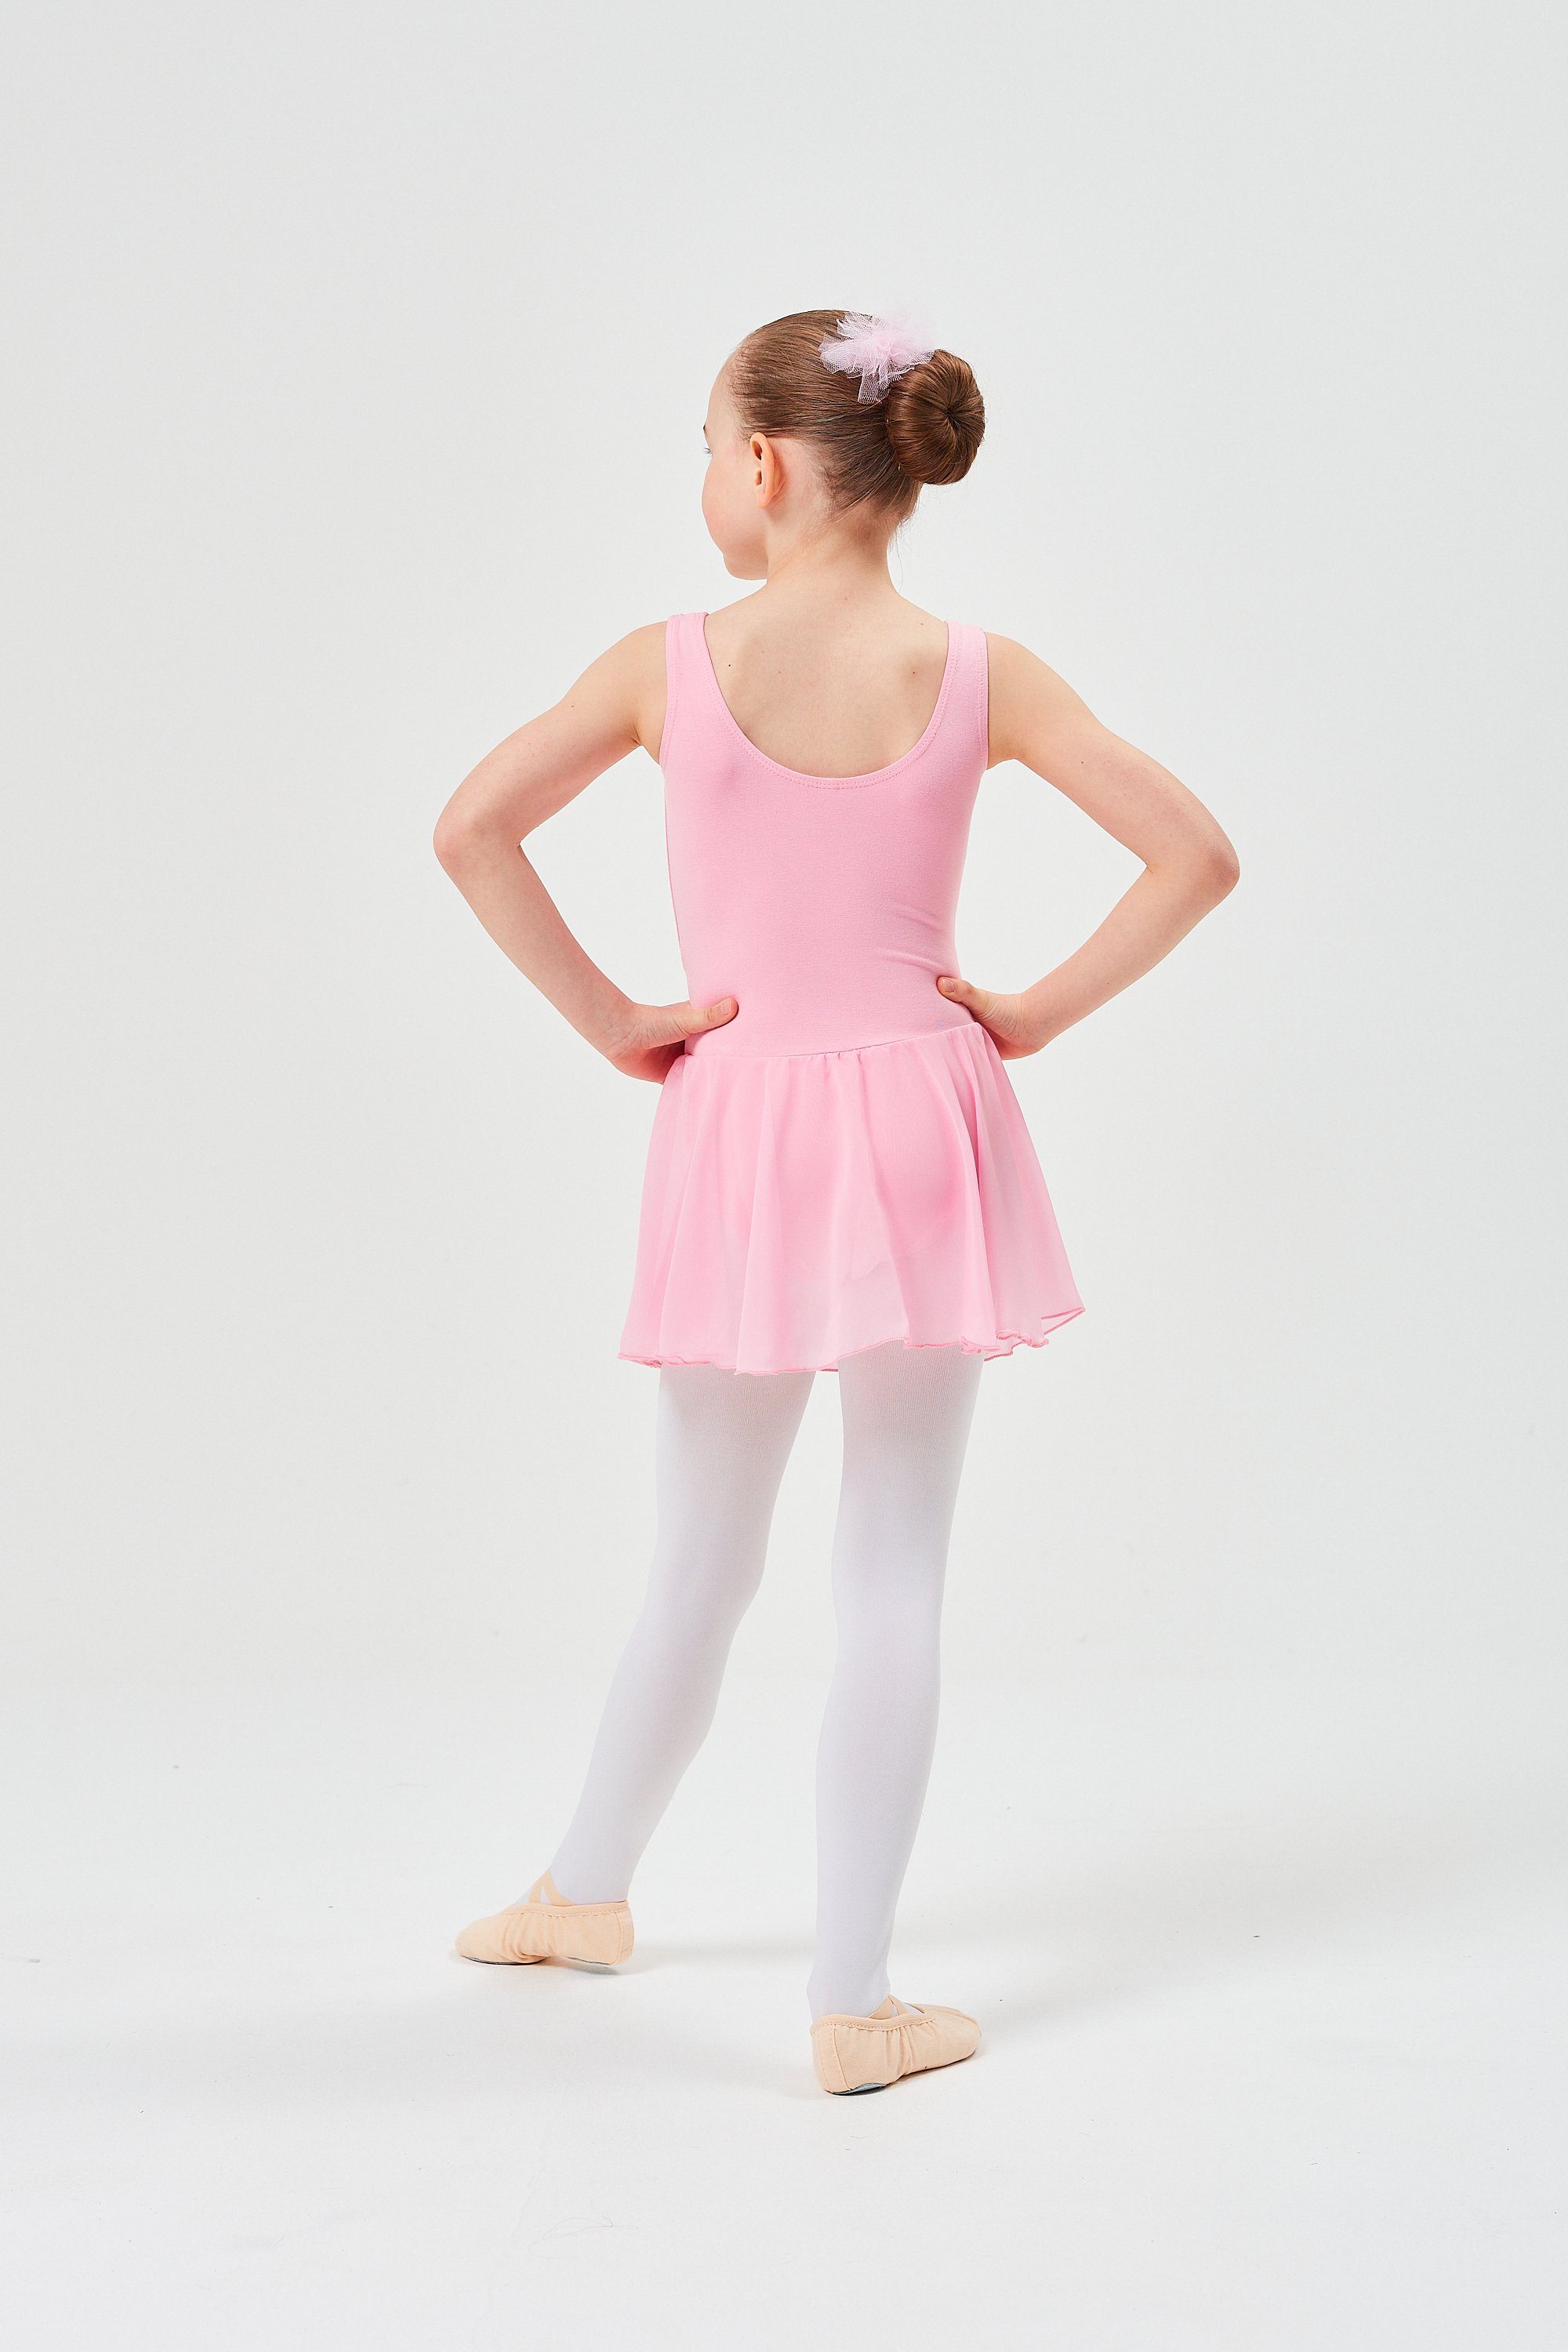 wunderbar Chiffon tanzmuster Minnie mit Ballett aus Mädchen Röckchen rosa weichem Trikot Ballettkleid für Chiffonkleid Baumwollmaterial